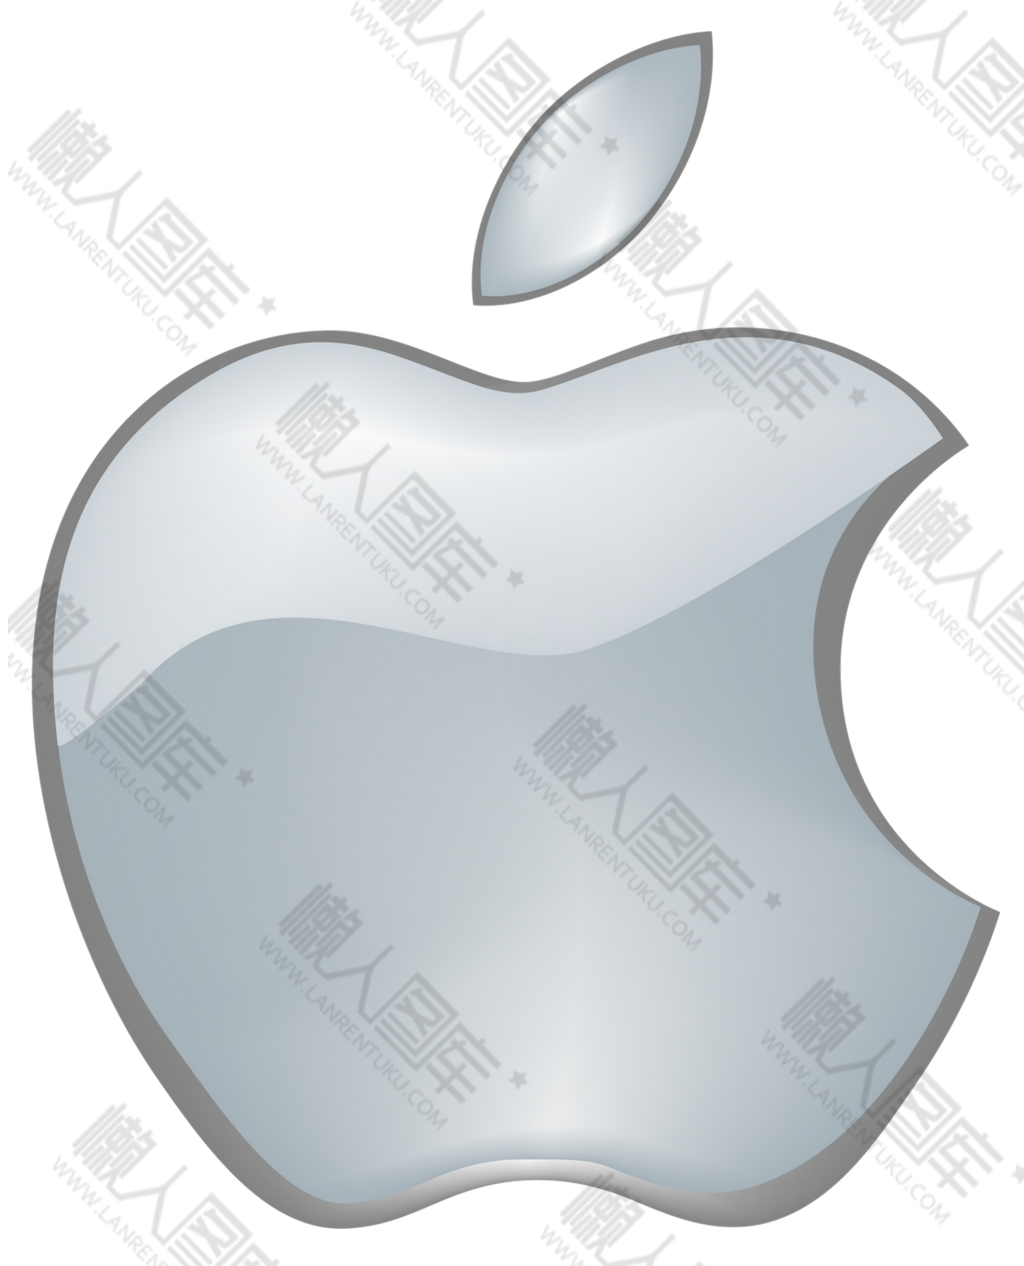 苹果公司logo